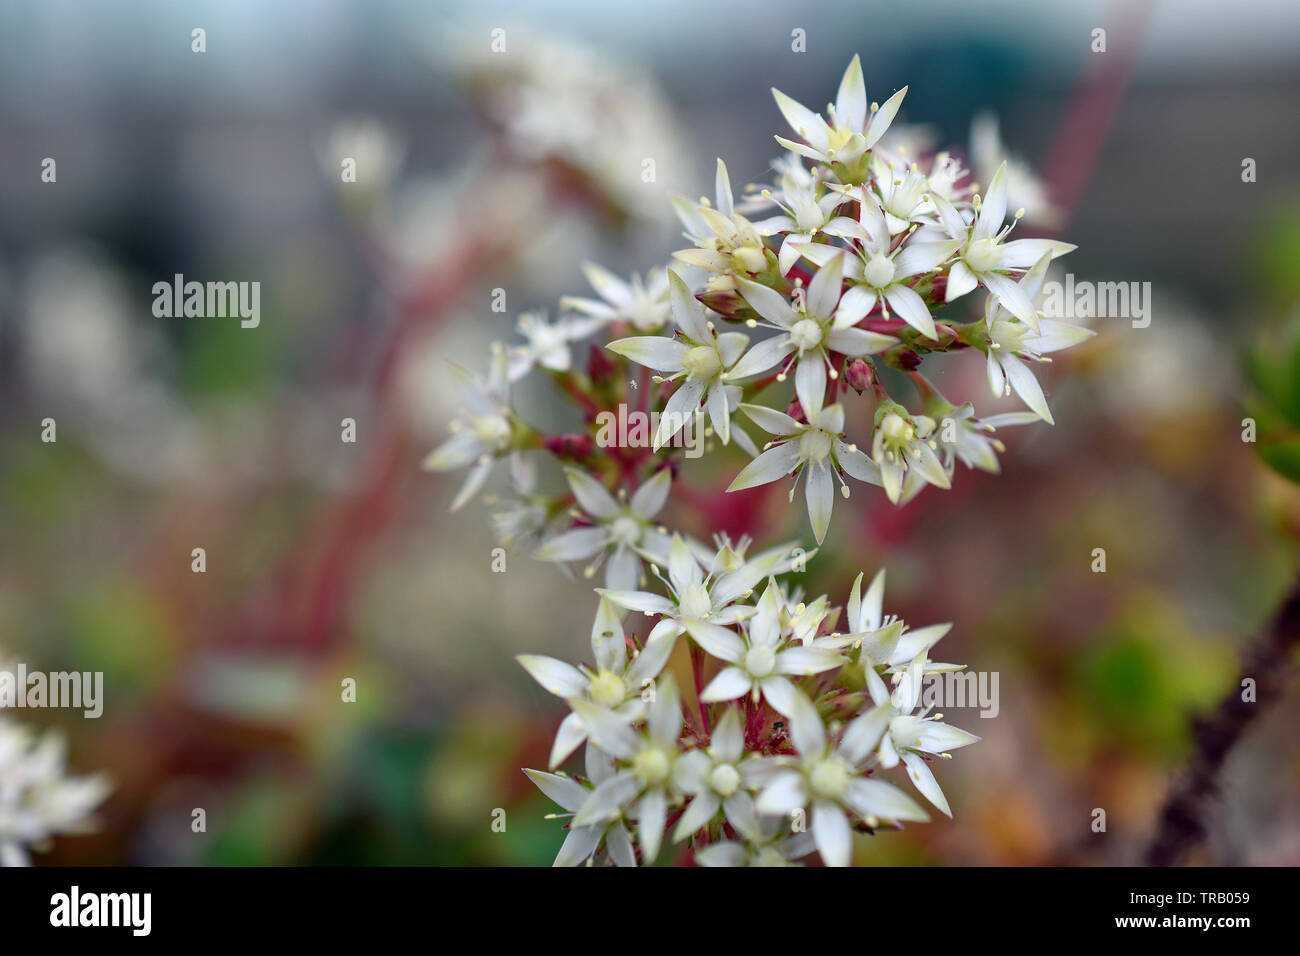 Coppertone Sedum Flowers Stock Photo